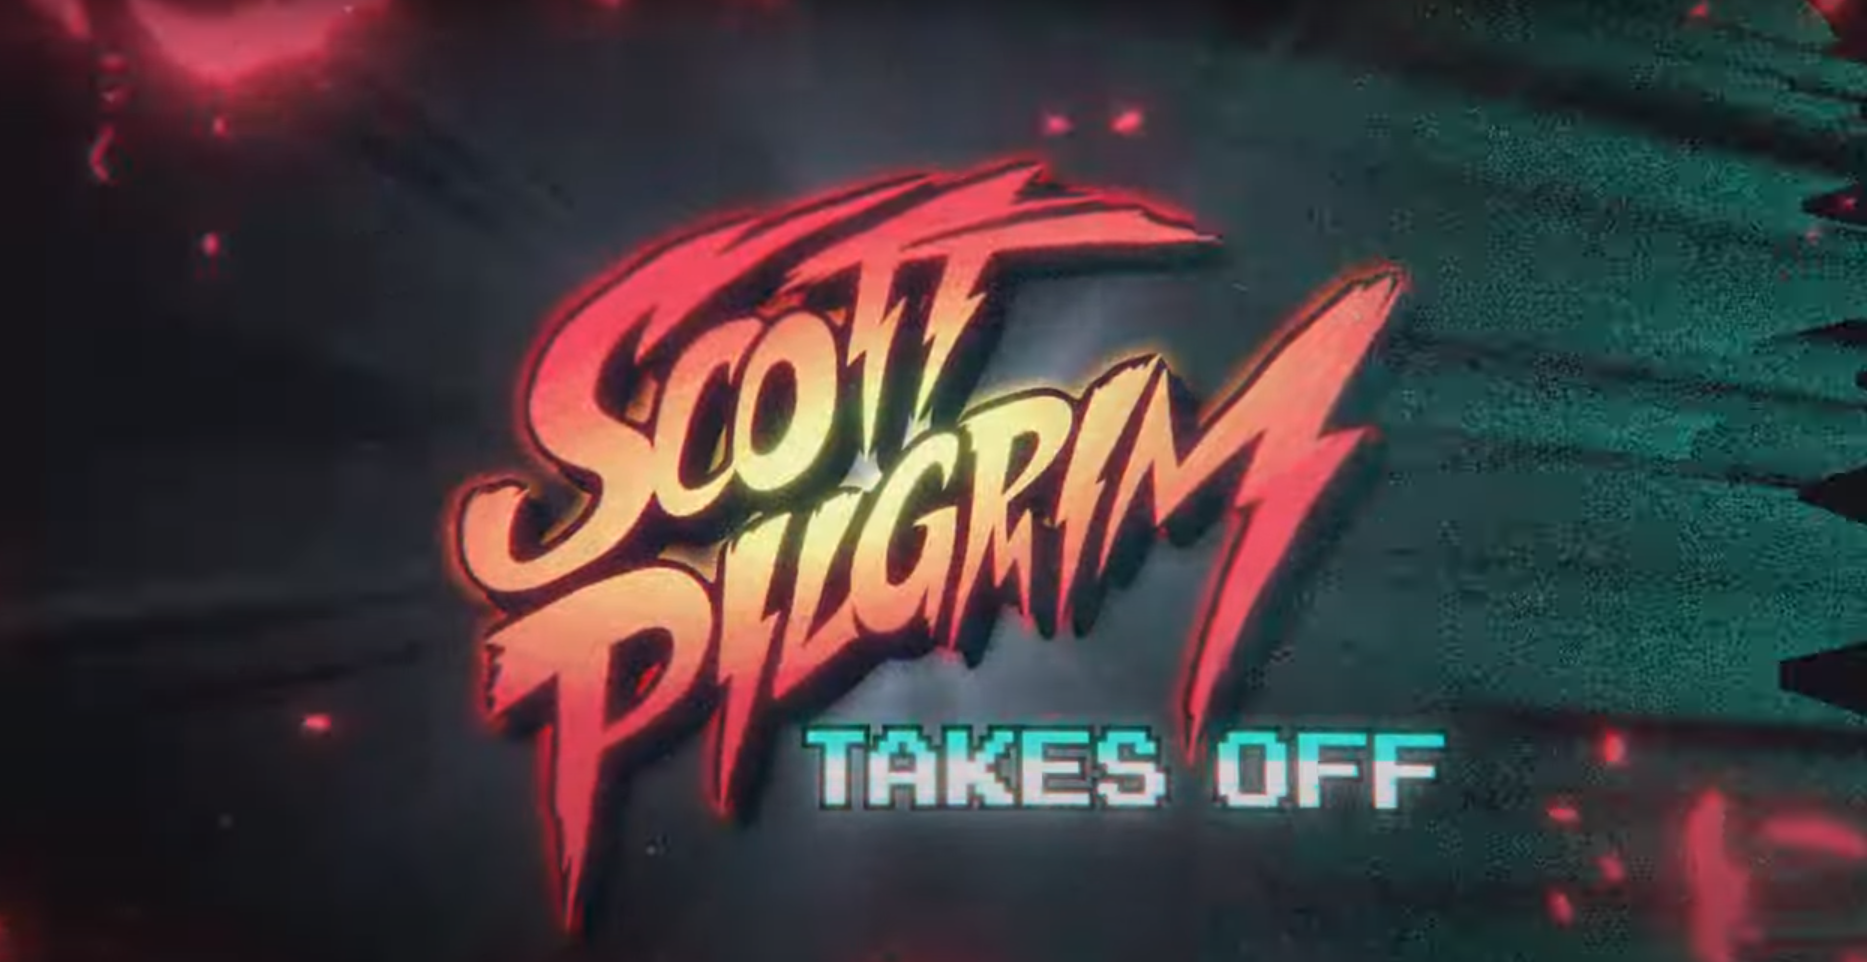 Netflix Debuts Teaser for 'Scott Pilgrim Takes Off' Anime – The